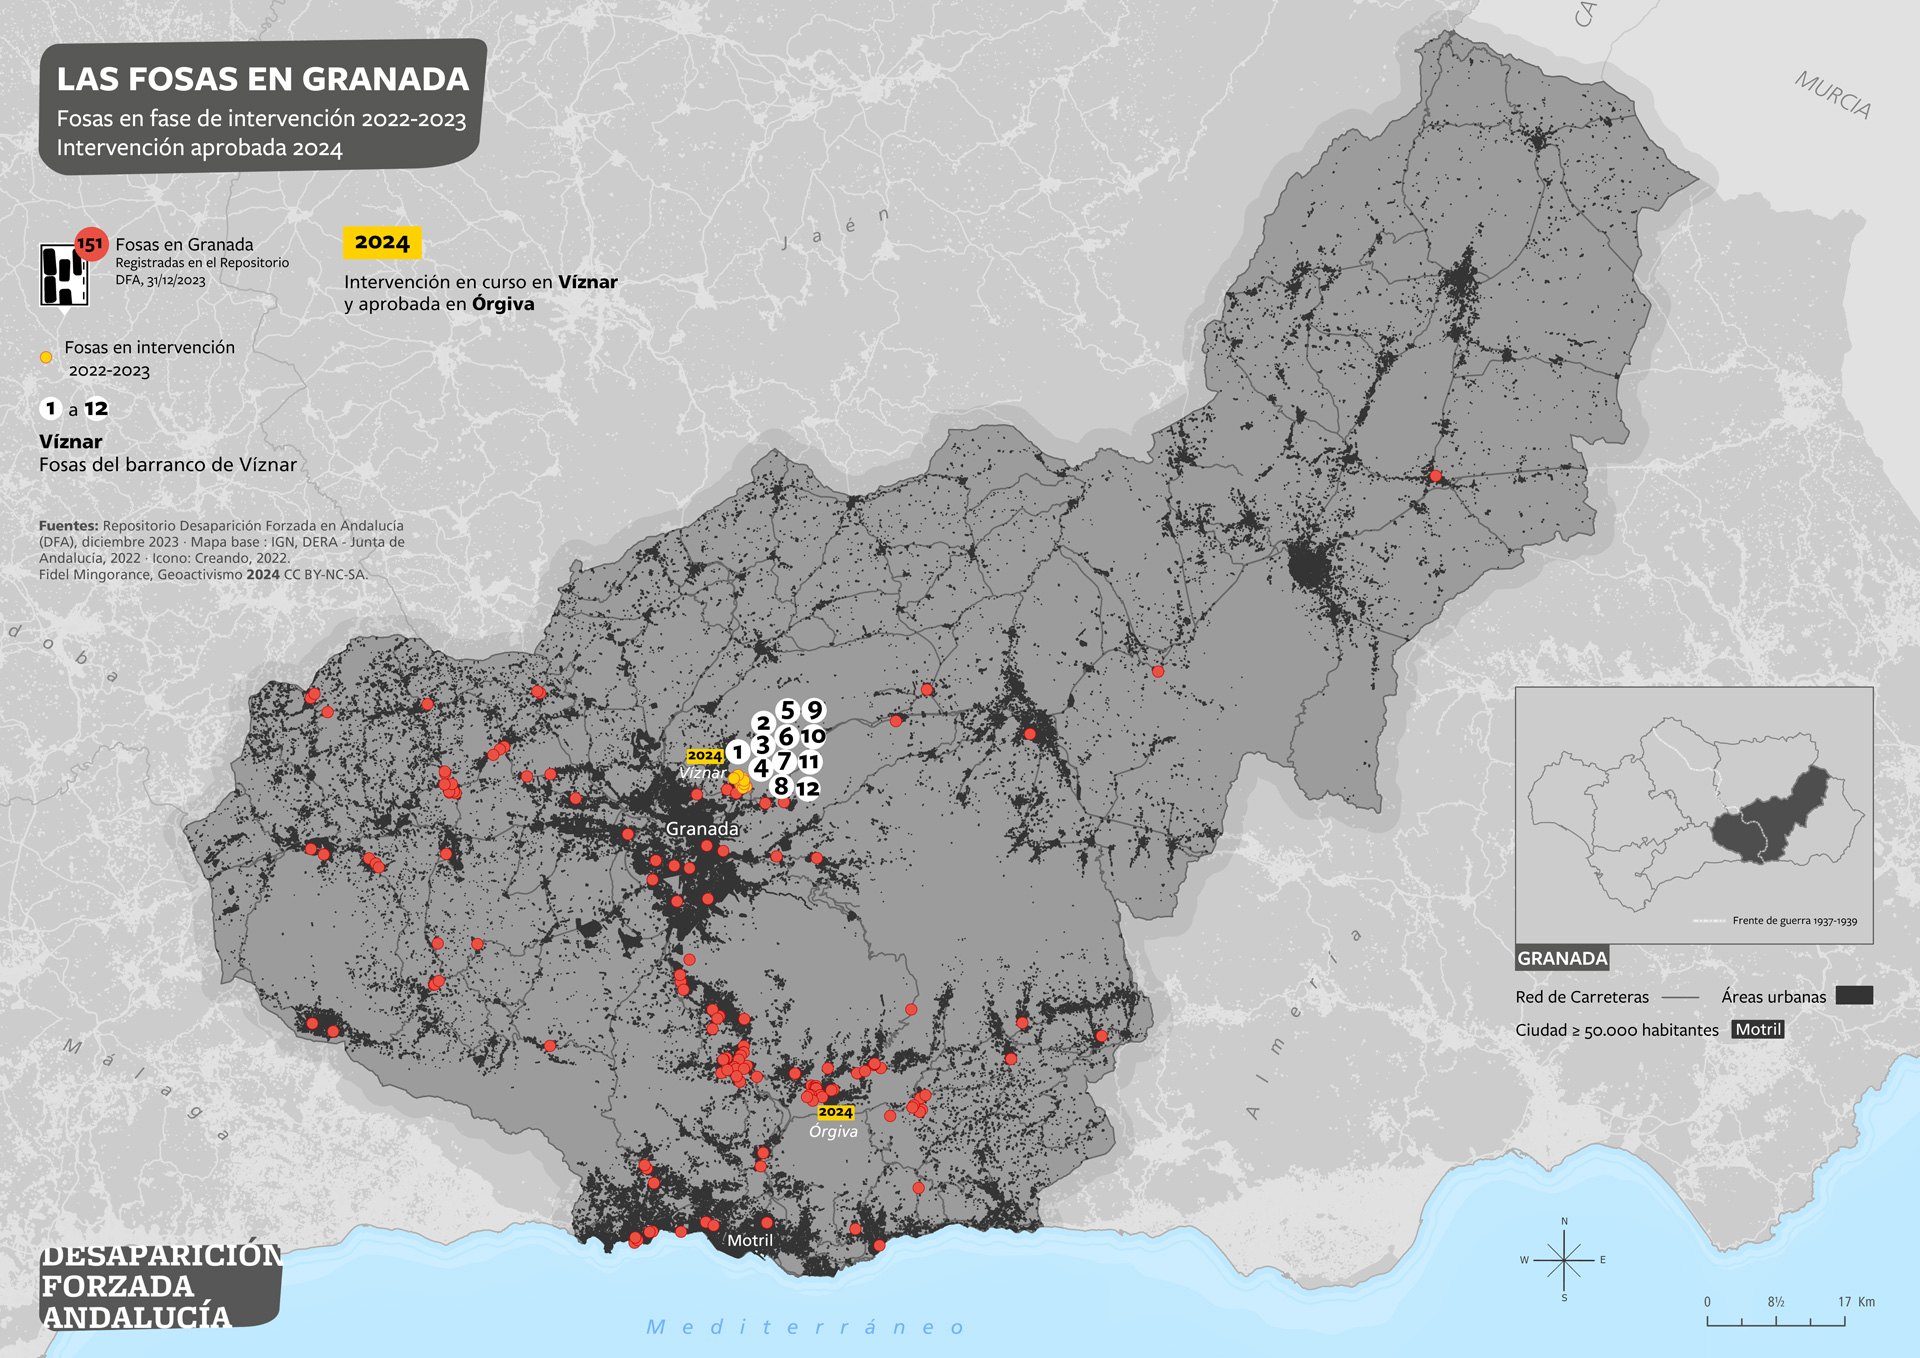 Las fosas en Granada.  Fosas en fase de intervención en 2022-2023. Intervenciones aprobadas 2024